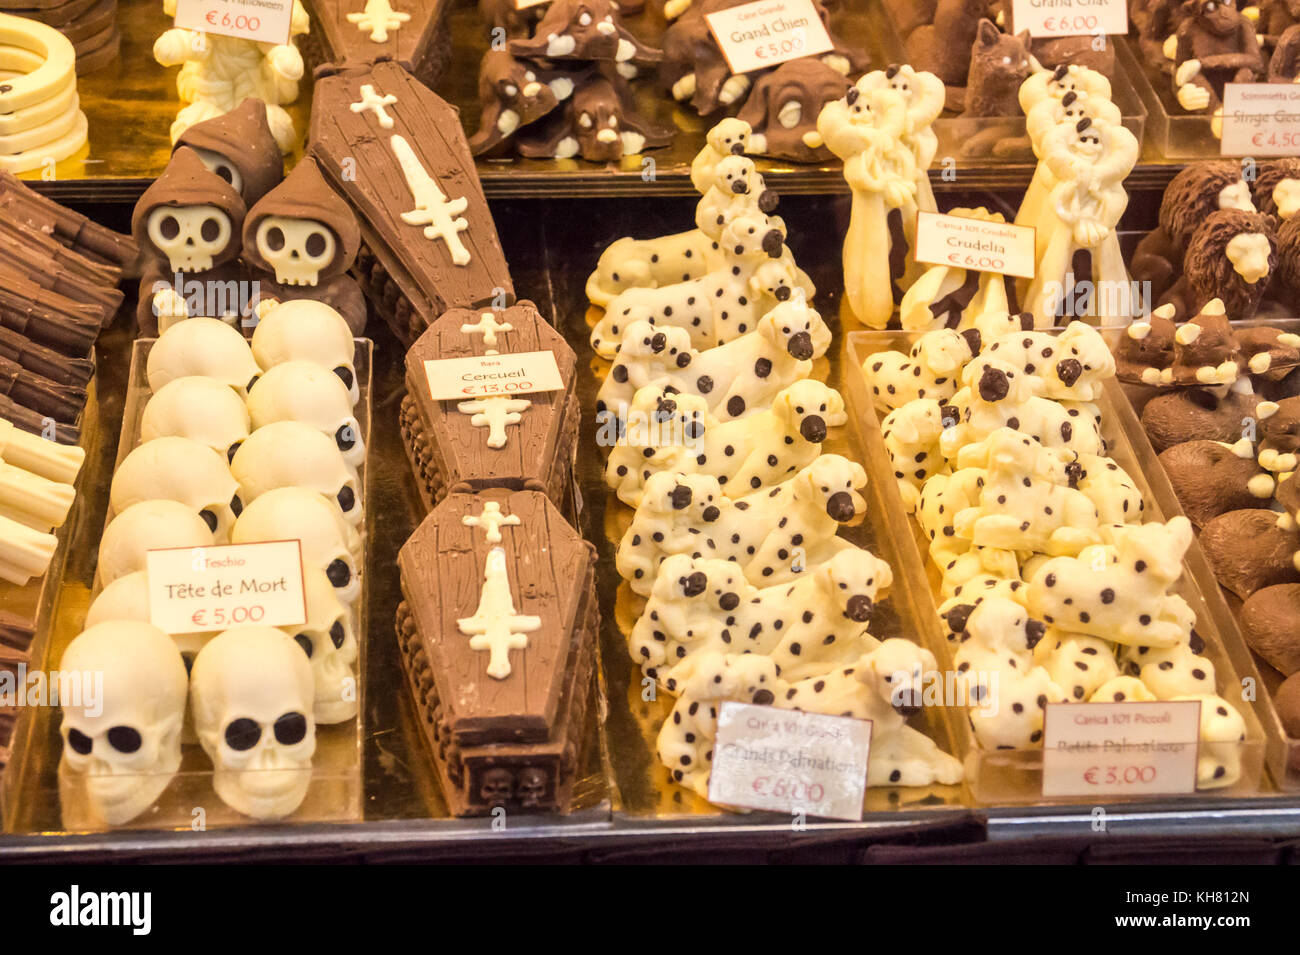 En chocolat moulé dans la forme des crânes, des cercueils, des chiens dalmatien, revolvers, fantômes, les souris et les lions, Toulouse, Occitanie, France Banque D'Images